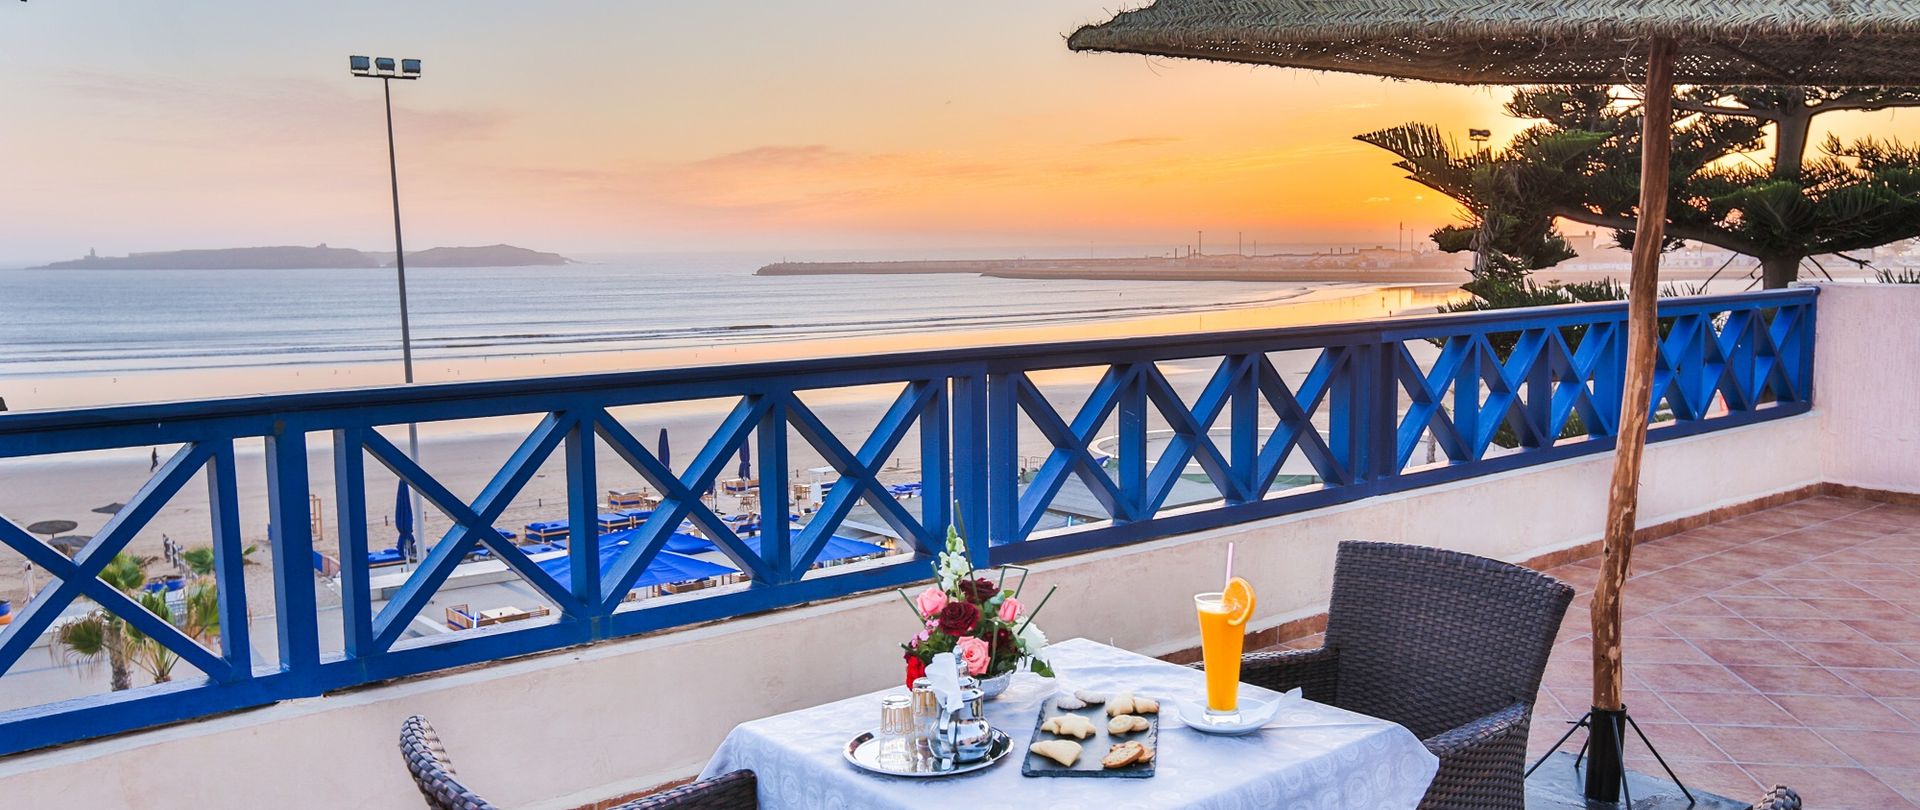 Séjour surf en hôtel tout confort à Essaouira